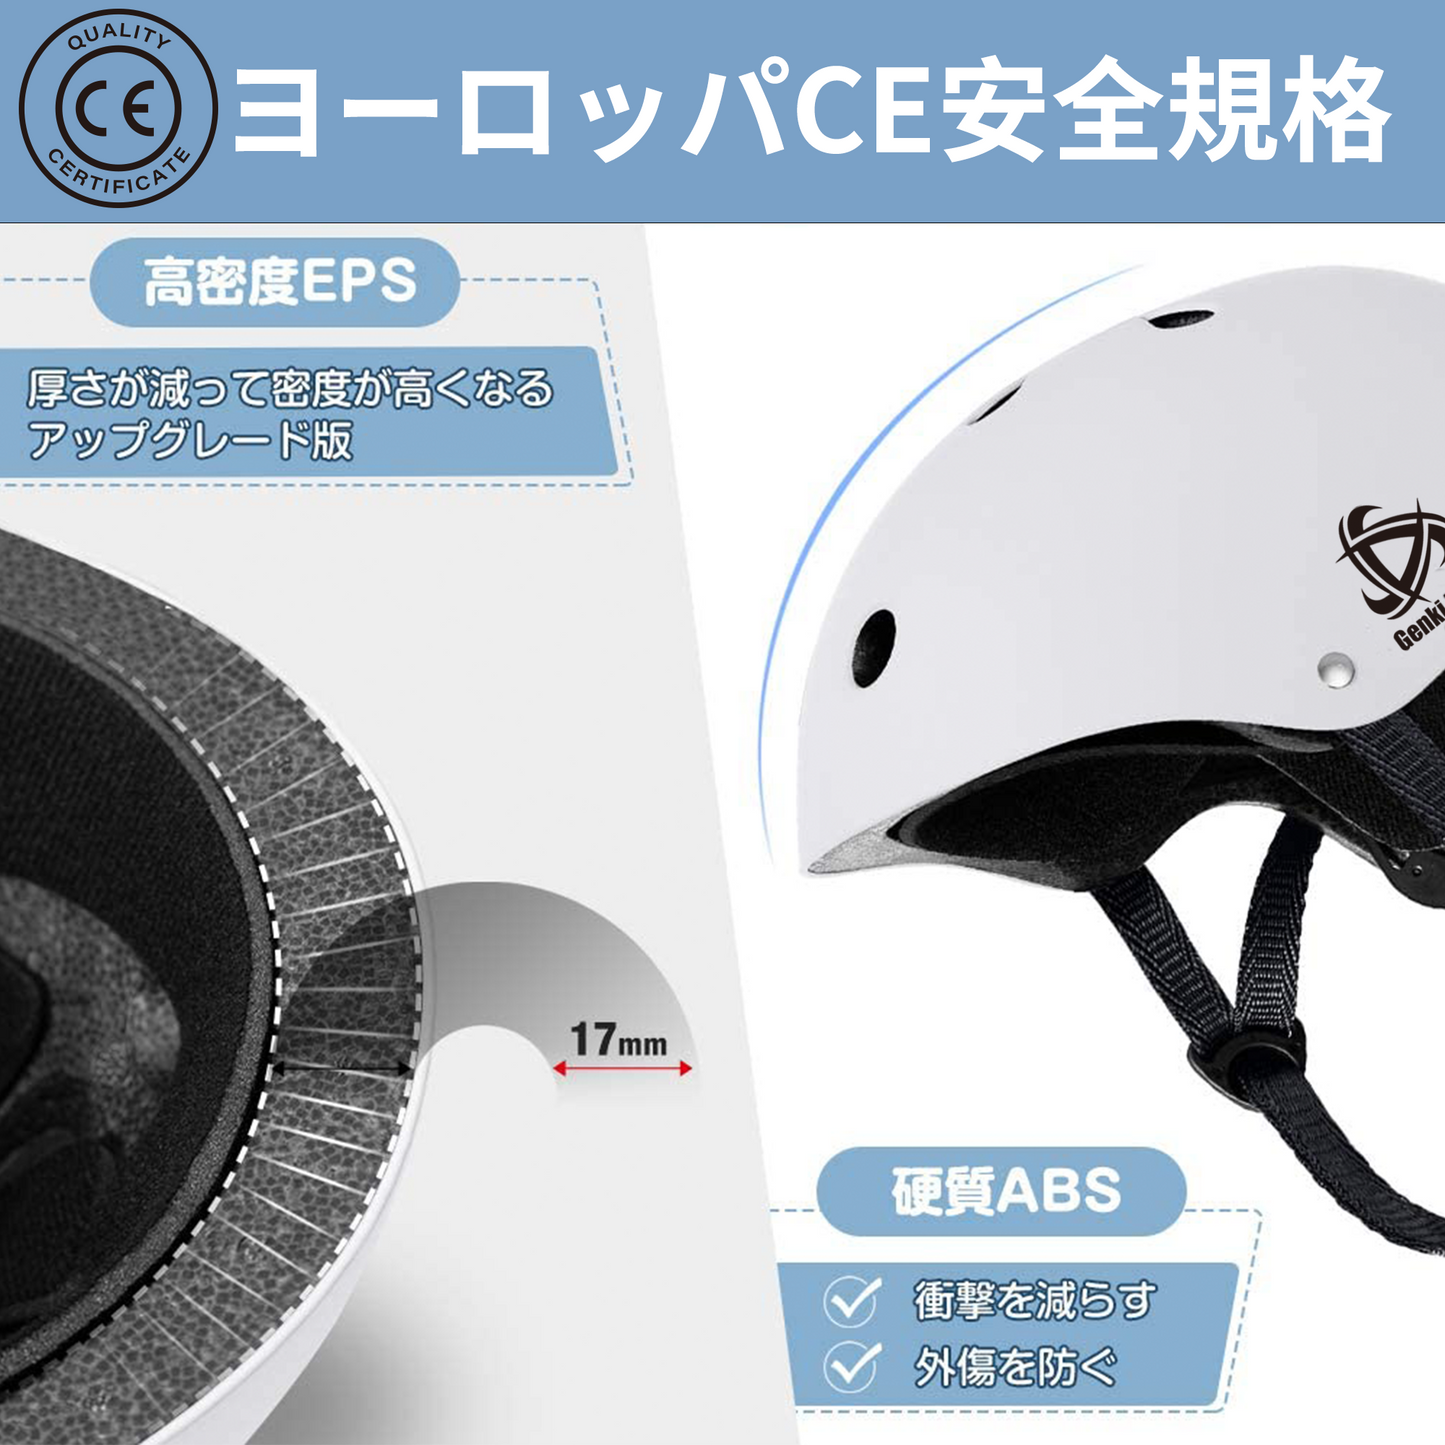 自転車ヘルメット CE安全規格 子供大人兼用 (オレンジ)